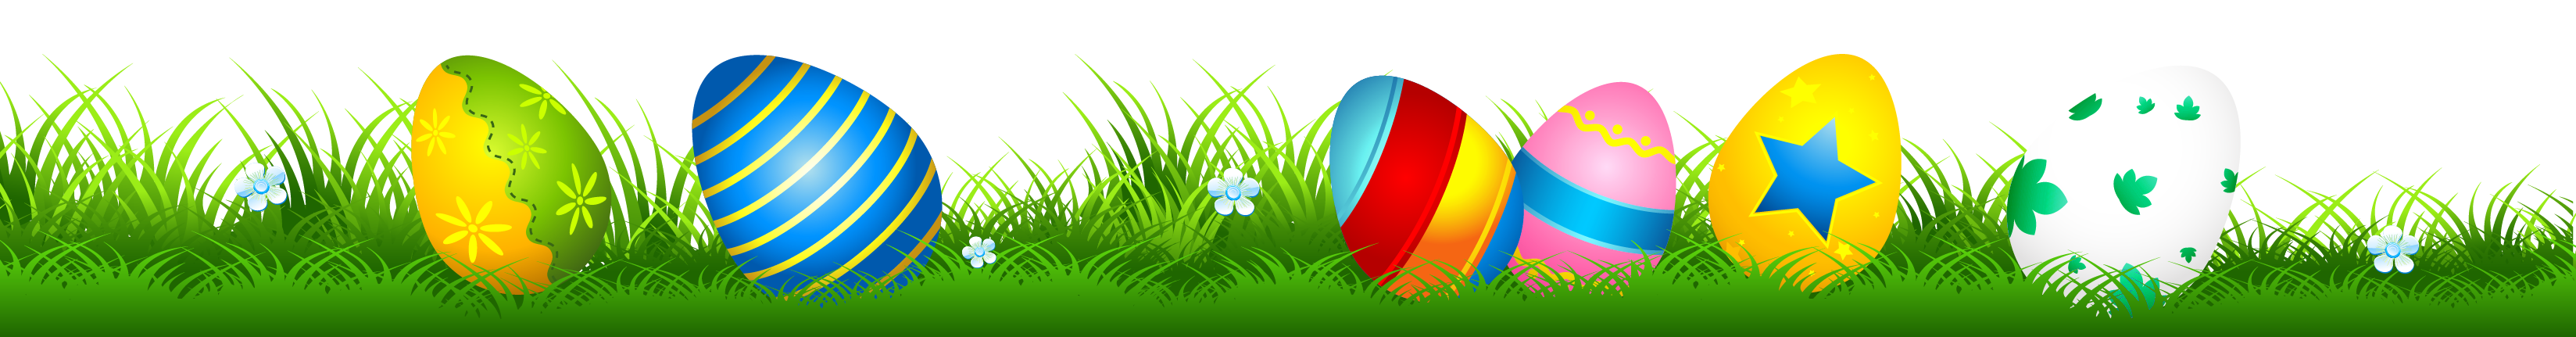 Download PNG image - Easter Egg Grass Transparent Background 